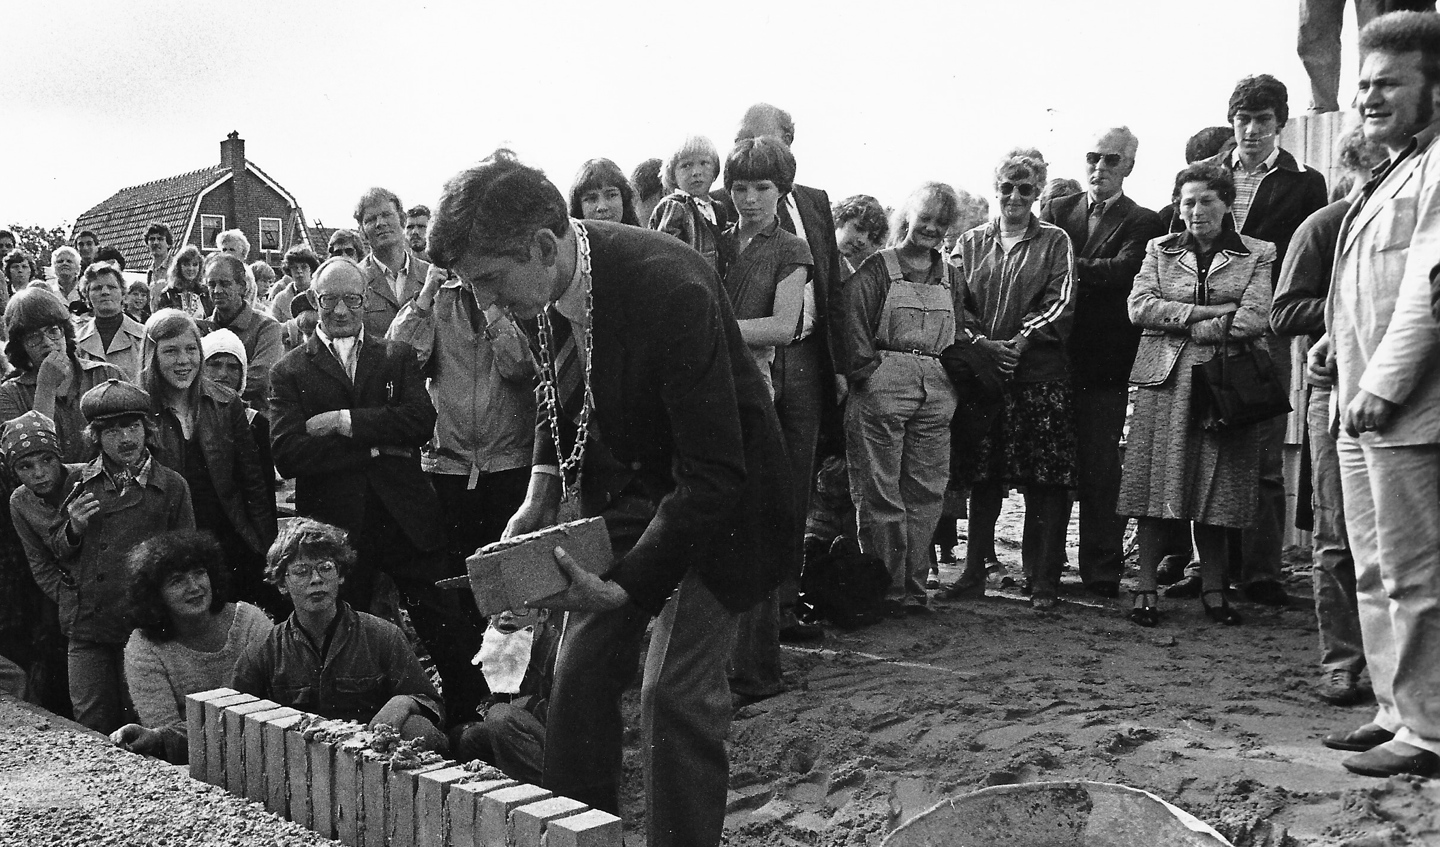 Burgemeester Panis legt de eerste steen op 25 aug 1979. Foto uit archief Wout van Winssen